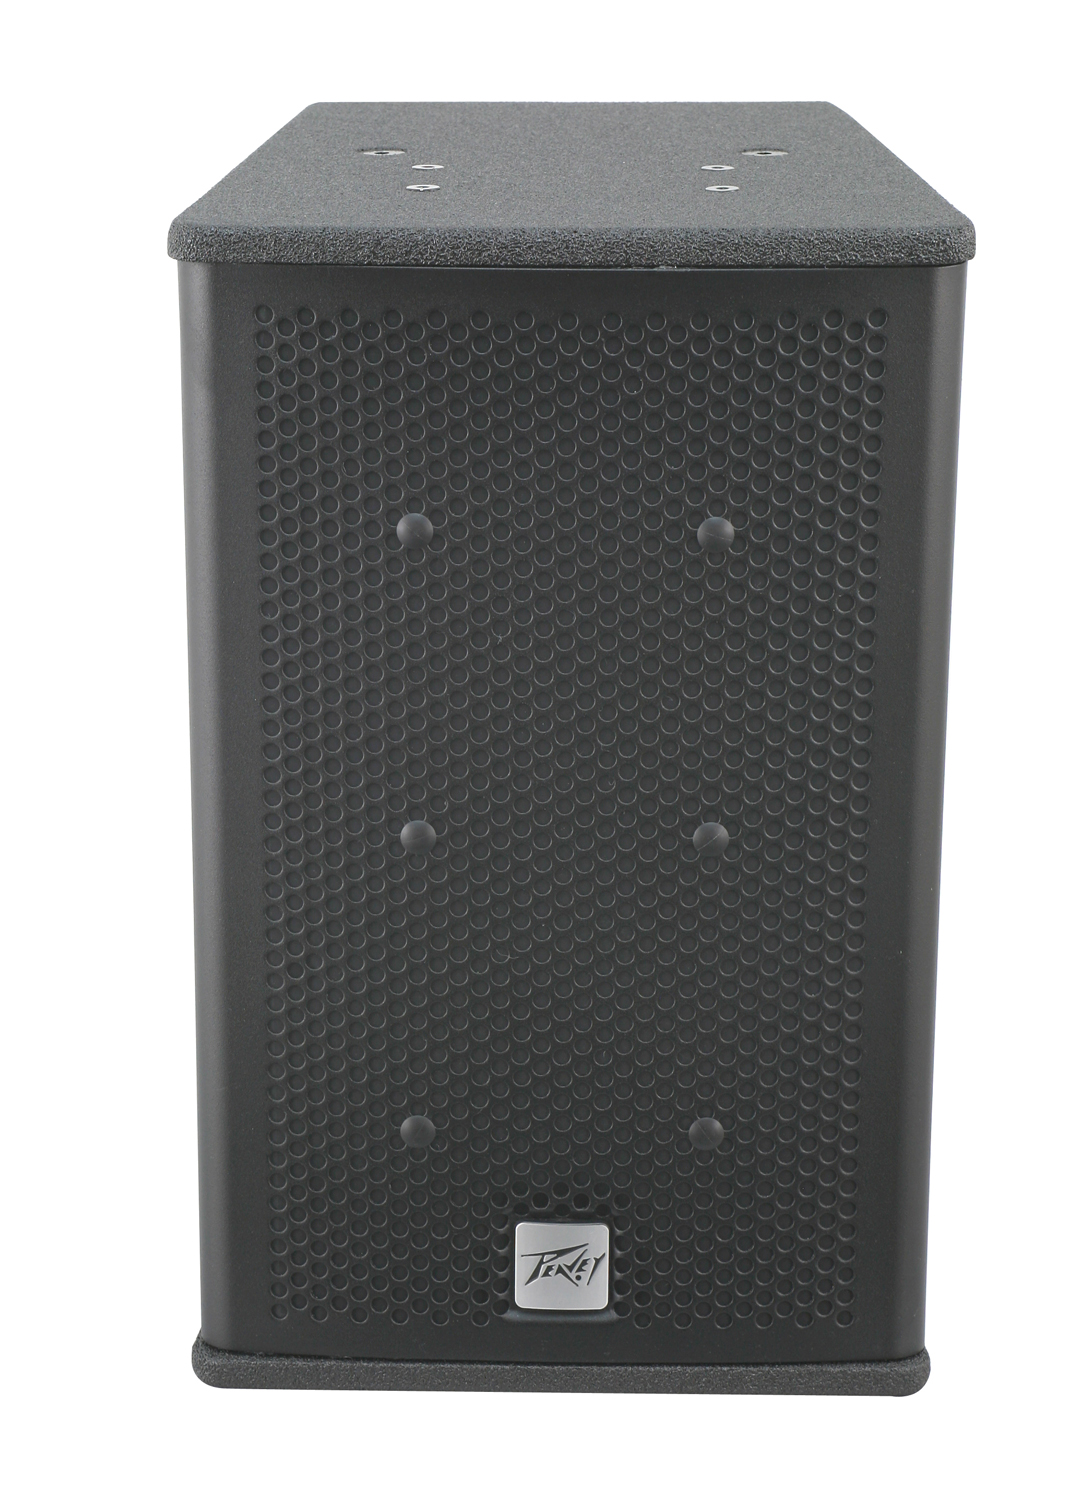 Peavey Element 108 - 8" 150W Compact 2-Way Outdoor Speaker